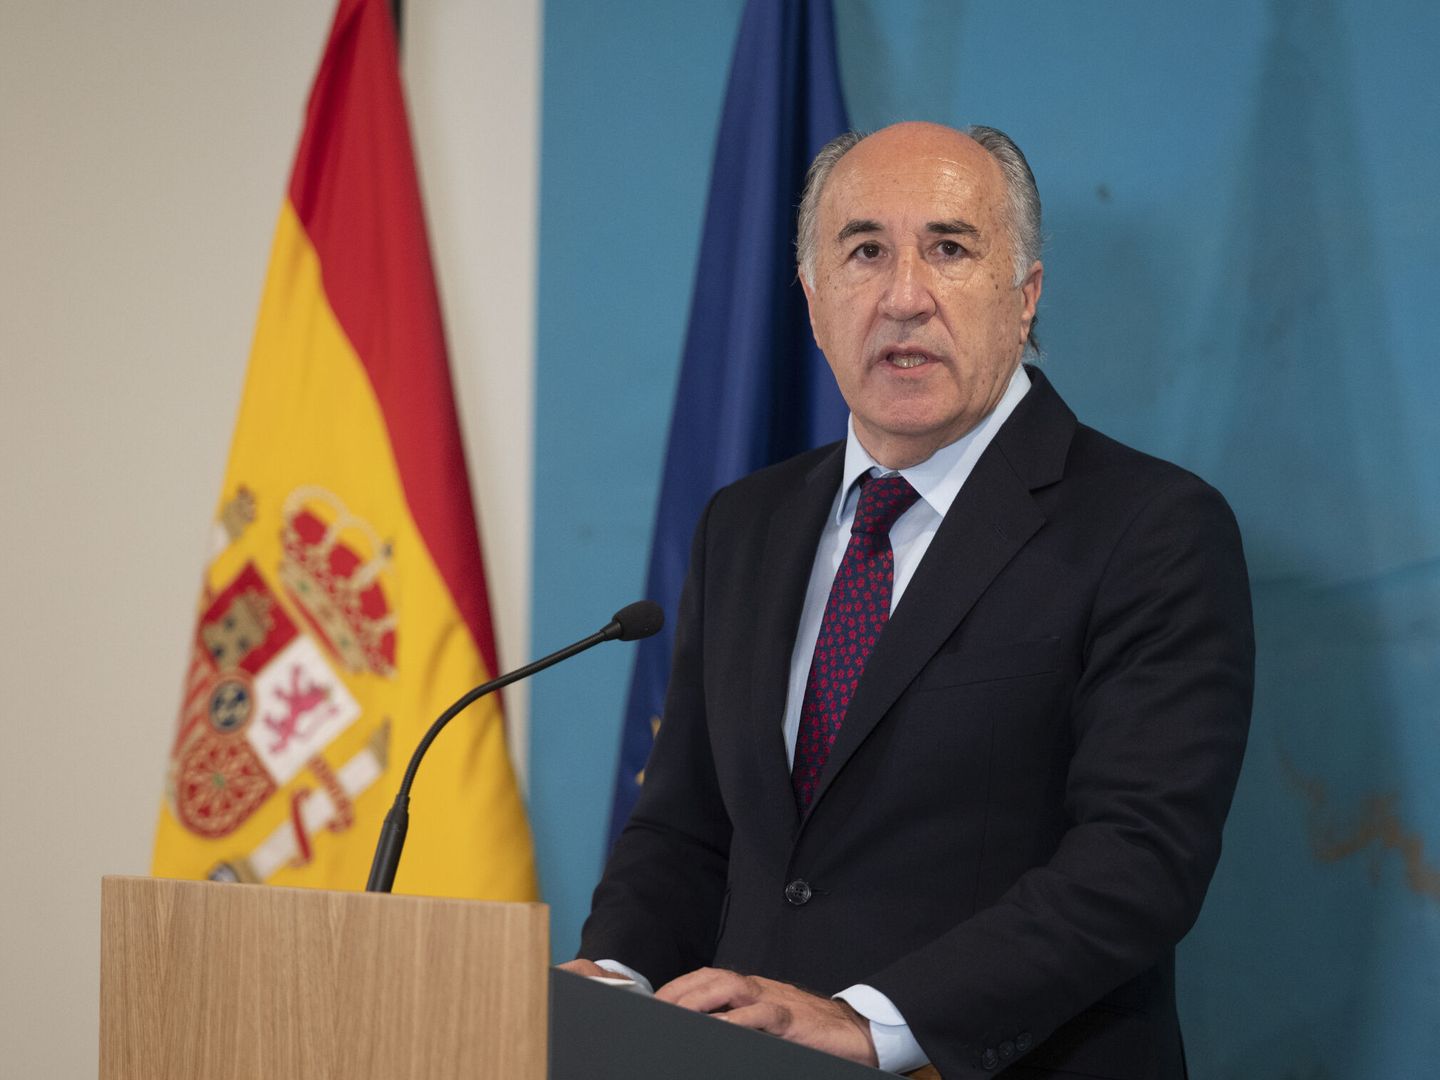 José Ignacio Landaluce, senador del PP y alcalde de Algeciras, también actualizó sus bienes. (EFE)